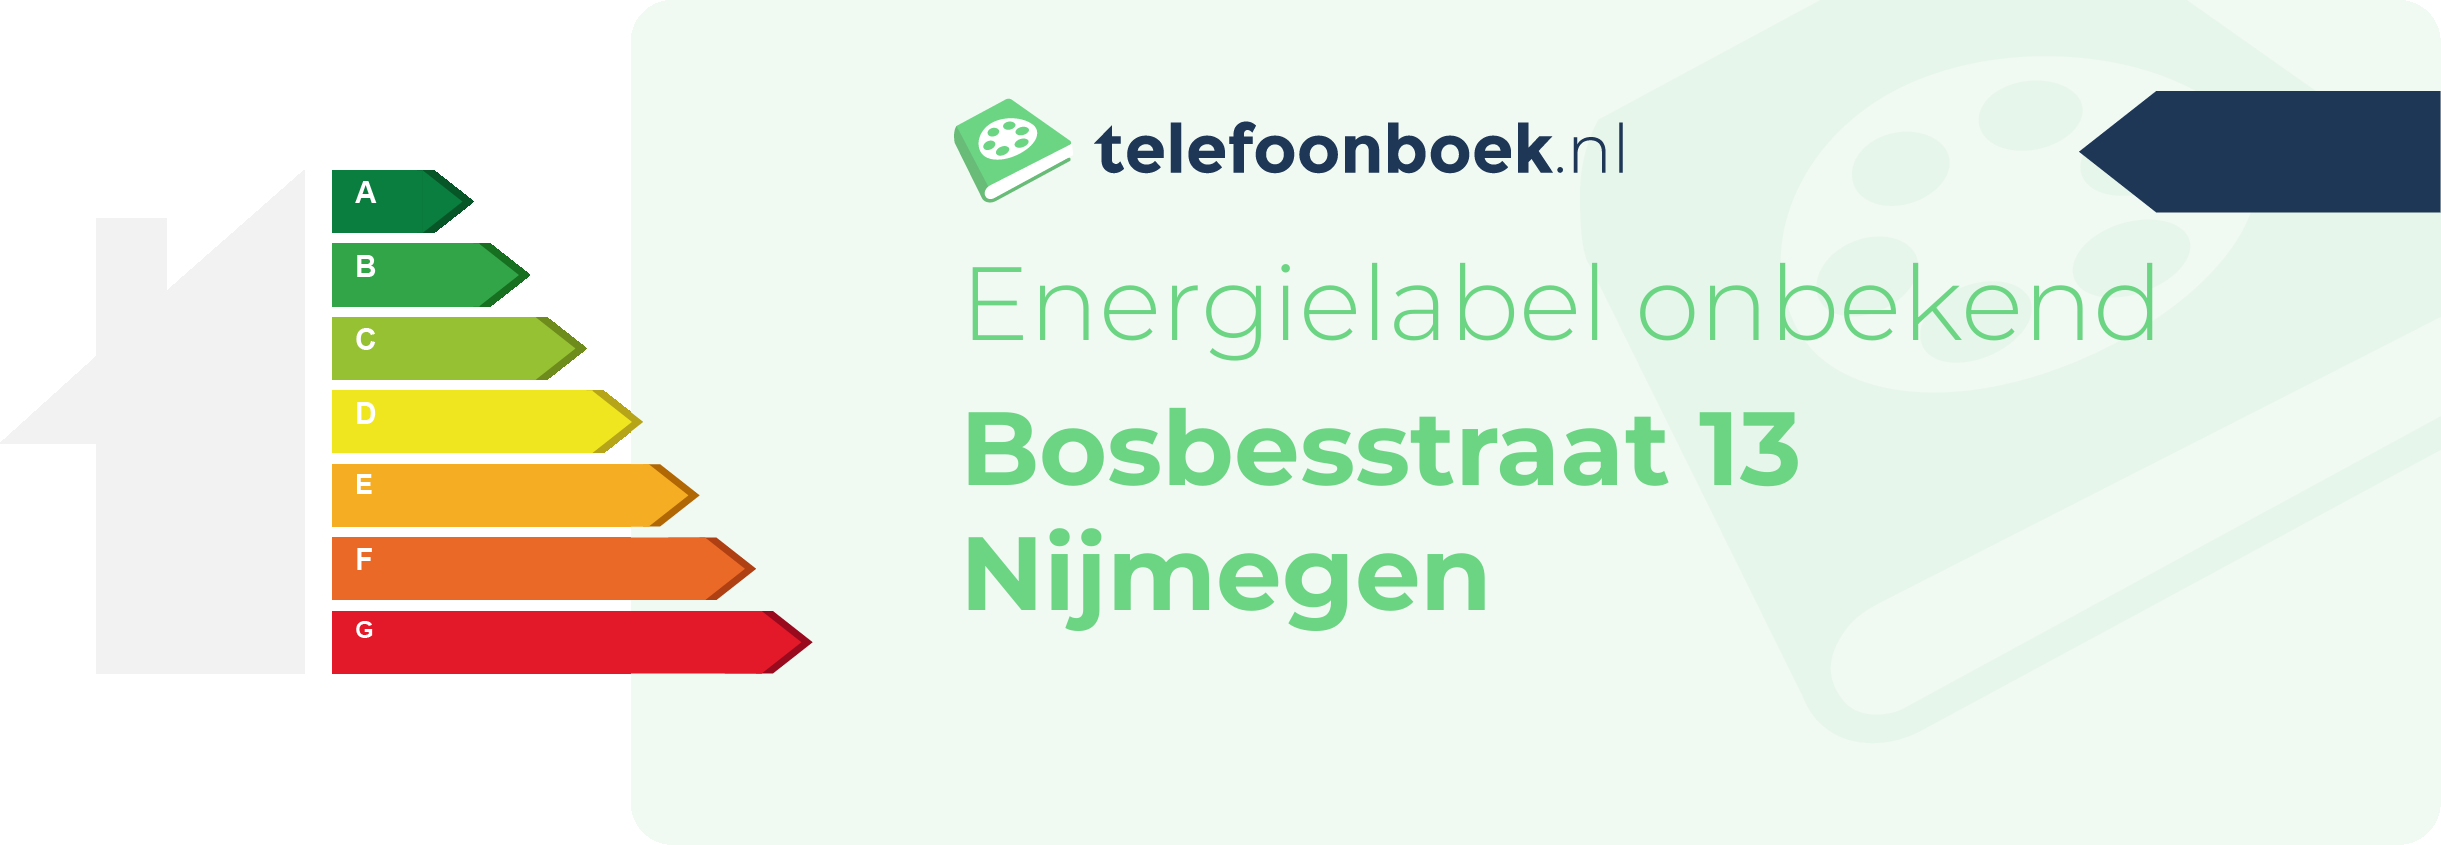 Energielabel Bosbesstraat 13 Nijmegen